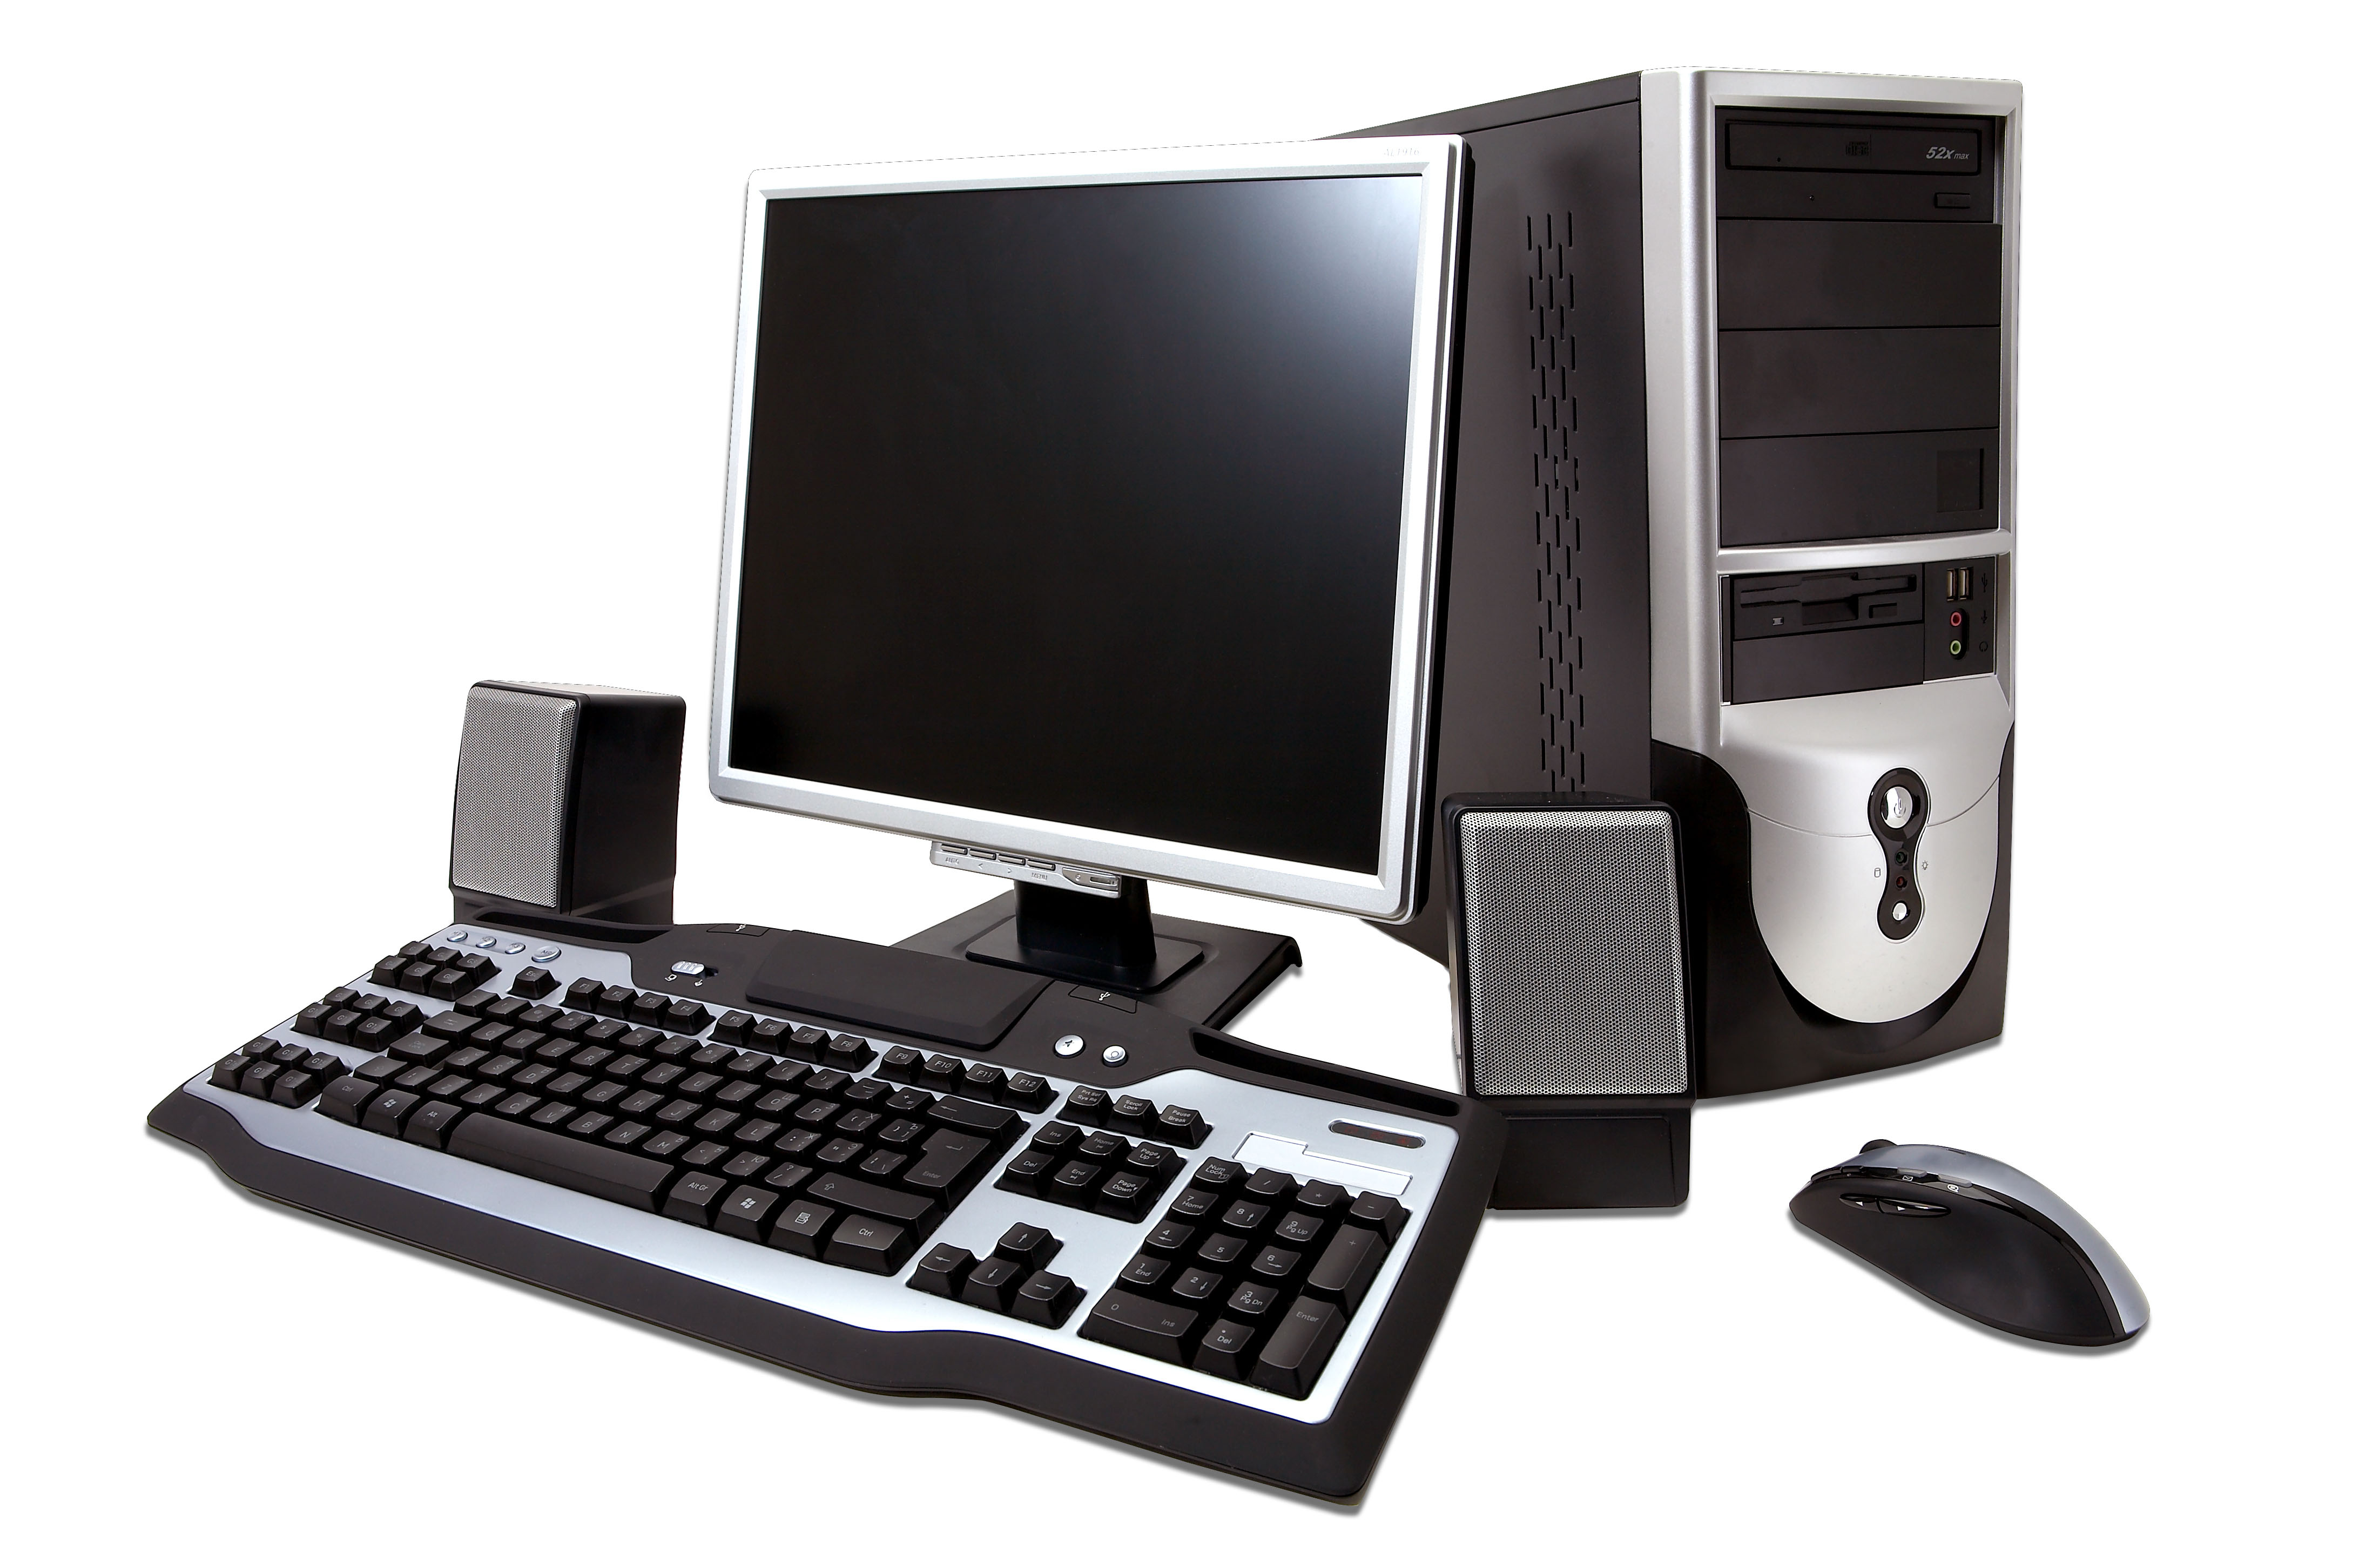 Комплект персонального компьютера. Системный блок (компьютерная техника i3-3220). Компьютер (сист. Блок, монитор TFT 27 Acer Black). Инв.. ПК мышь клавиатура монитор 2021. Персональныйпомпьютер.